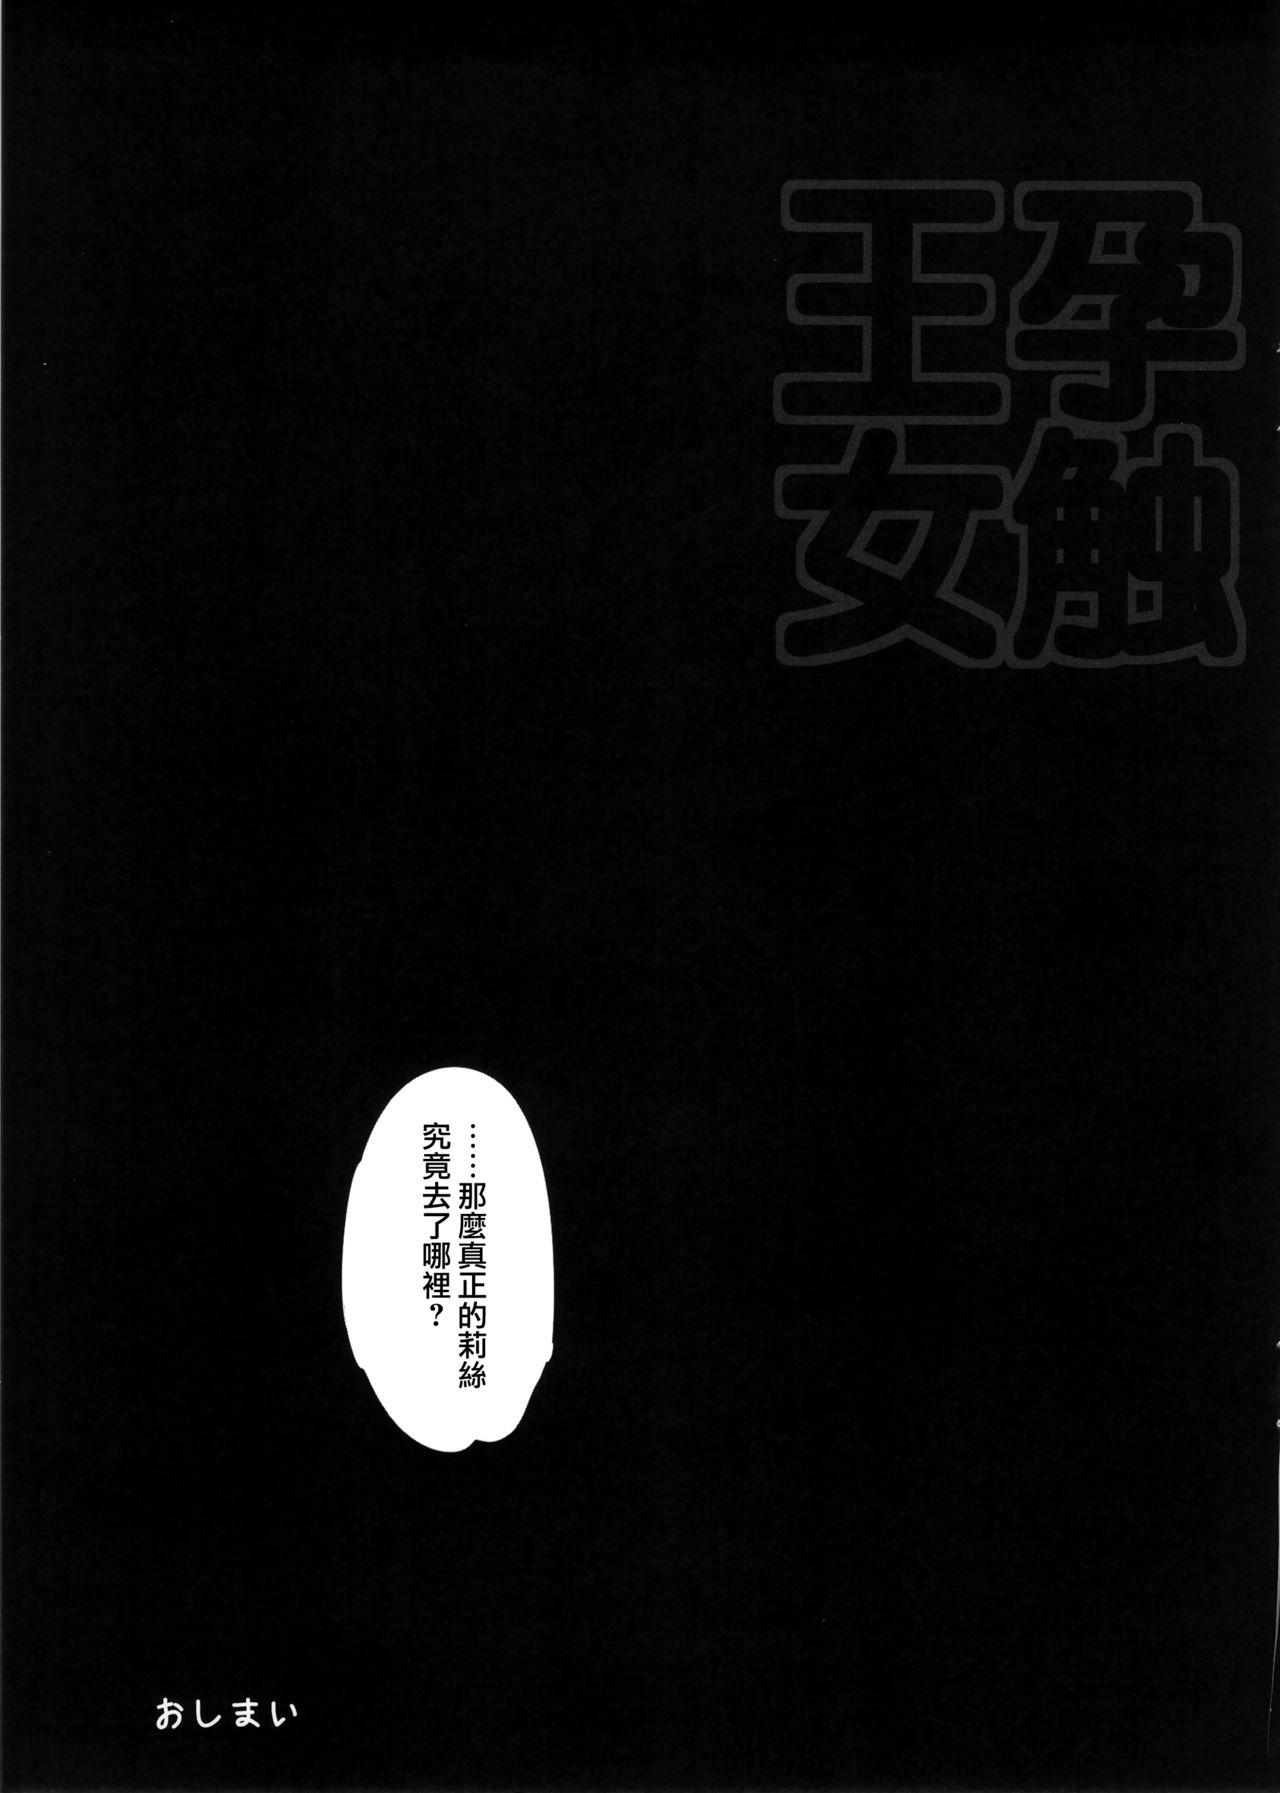 Solo Harafure - Seiken densetsu 3 Pelada - Page 10